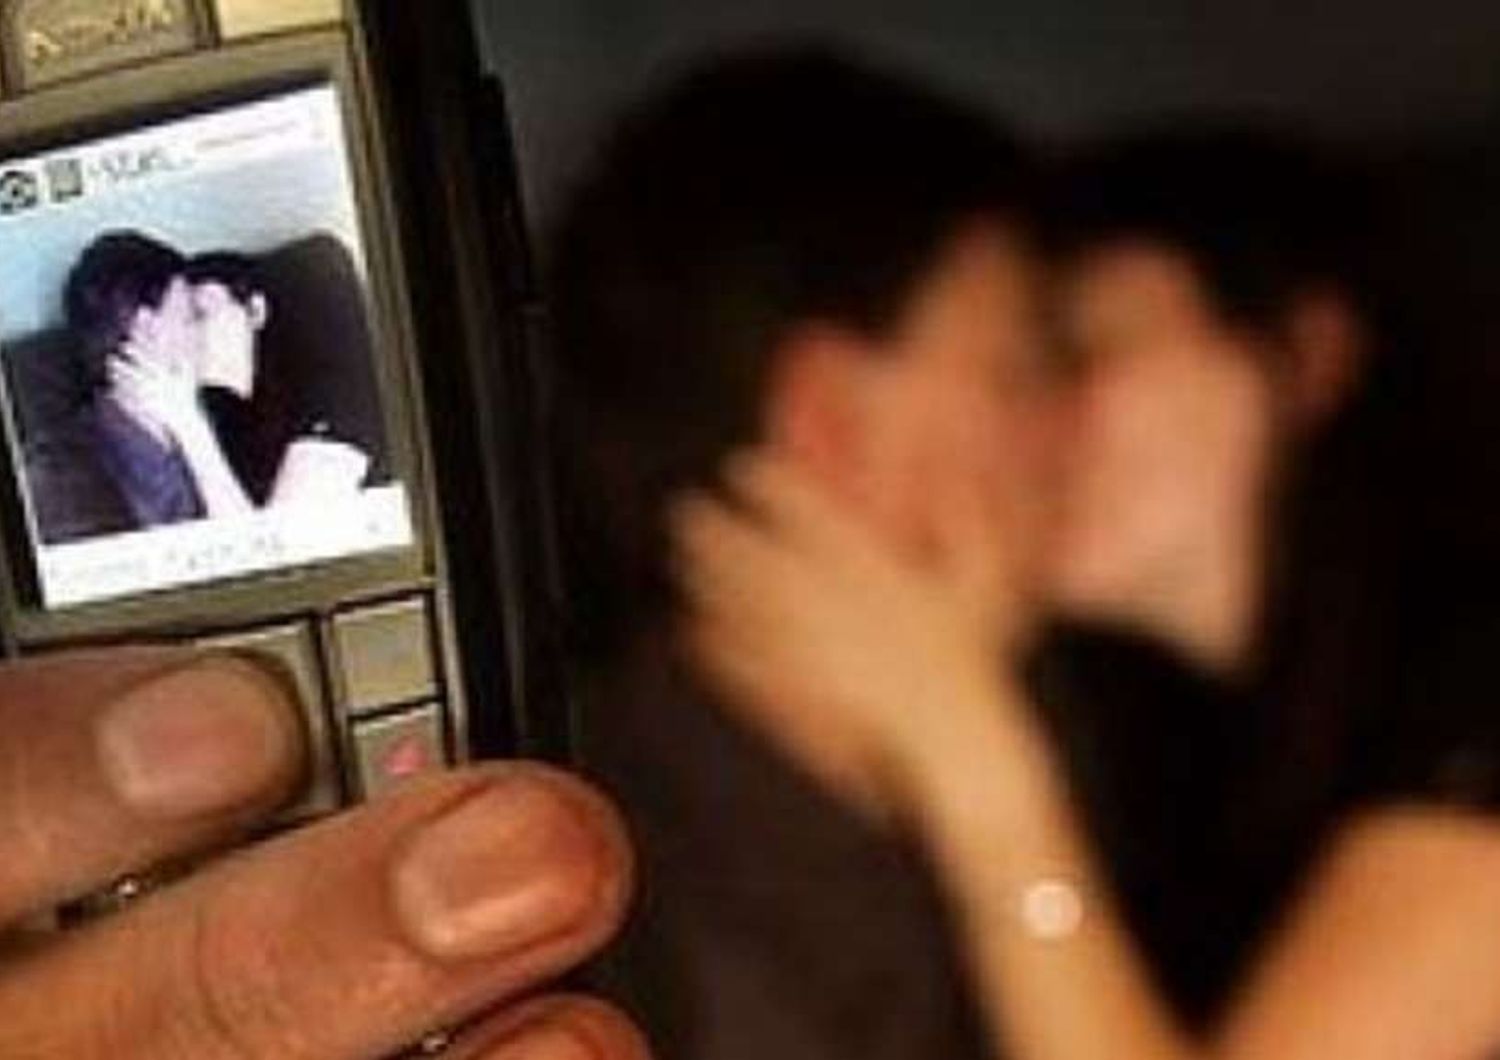 Adolescenti che fanno sexting hanno anche rapporti reali